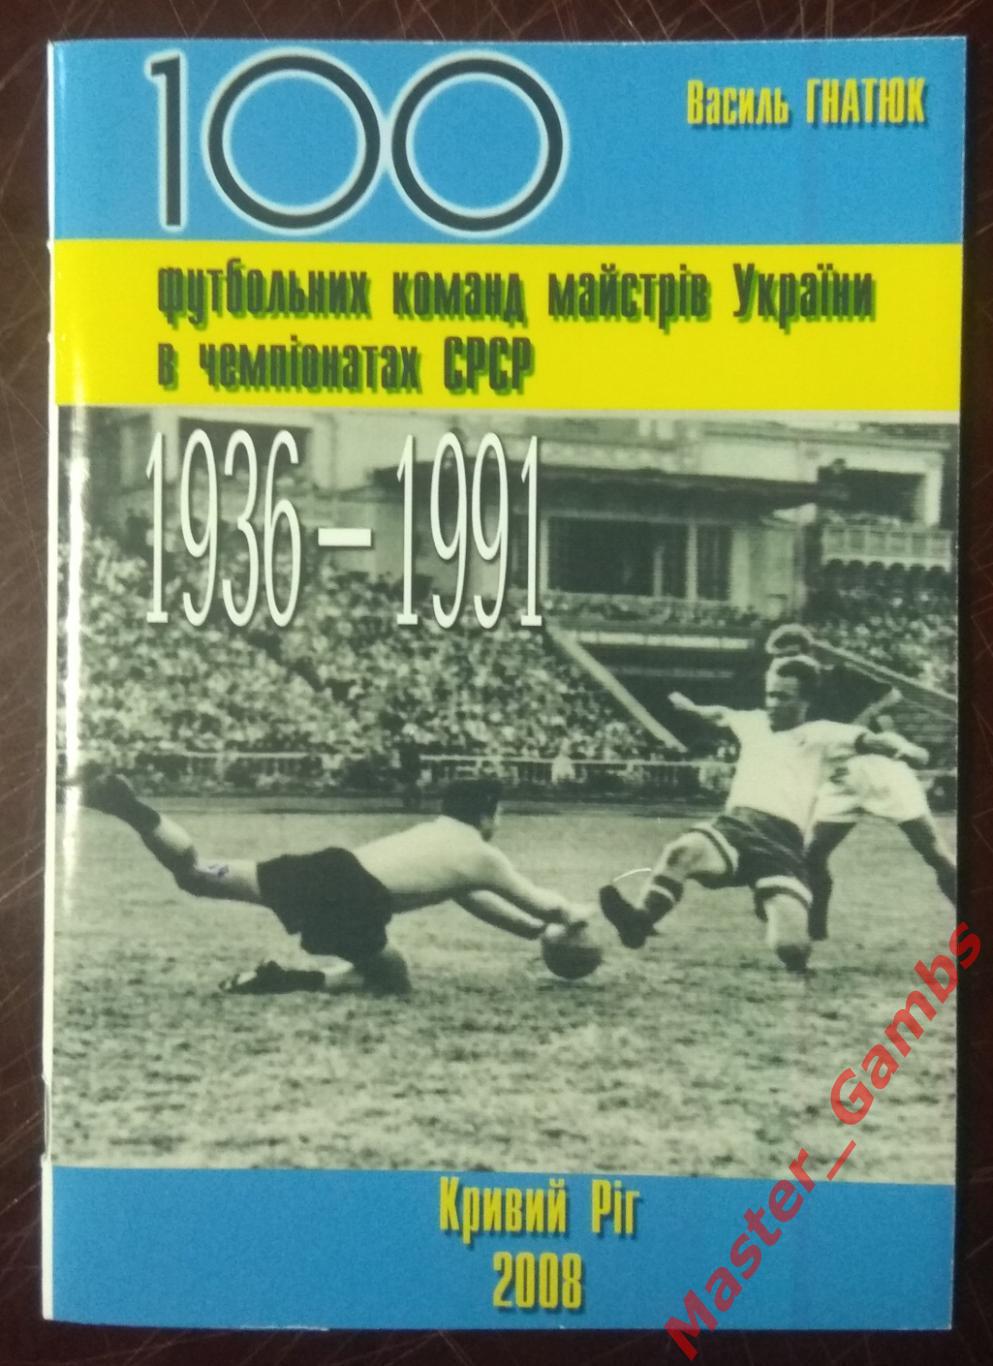 Гнатюк - 100 футбольных команд мастеров Украины... 1936 - 1991г.г. 2008